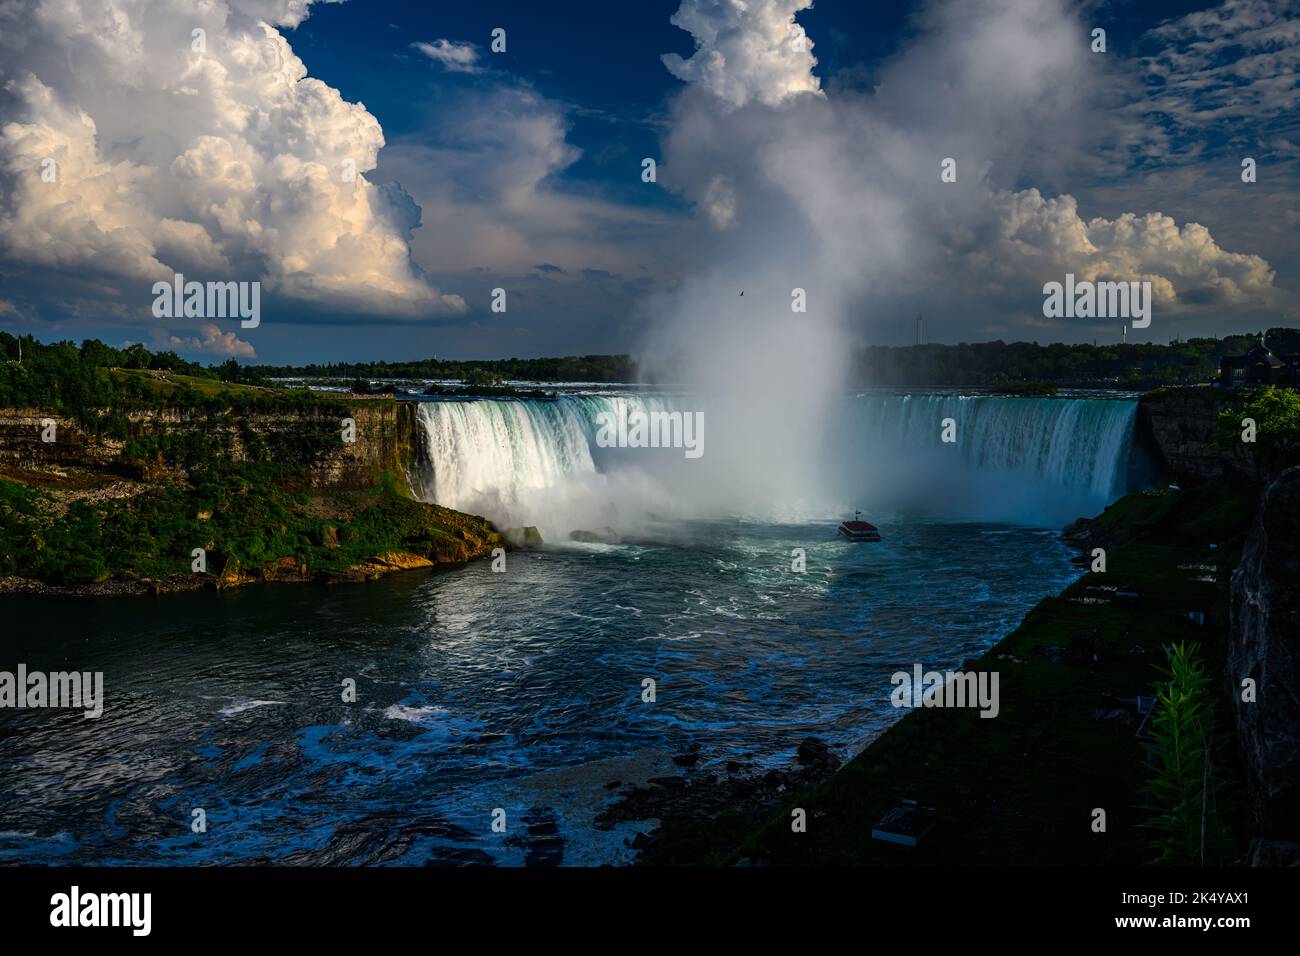 Vista laterale canadese delle cascate del Niagara, delle American Falls, delle Horseshoe Falls, del fiume Niagara, attrazioni turistiche, casinò, fuochi d'artificio e gite in barca al tramonto; Foto Stock